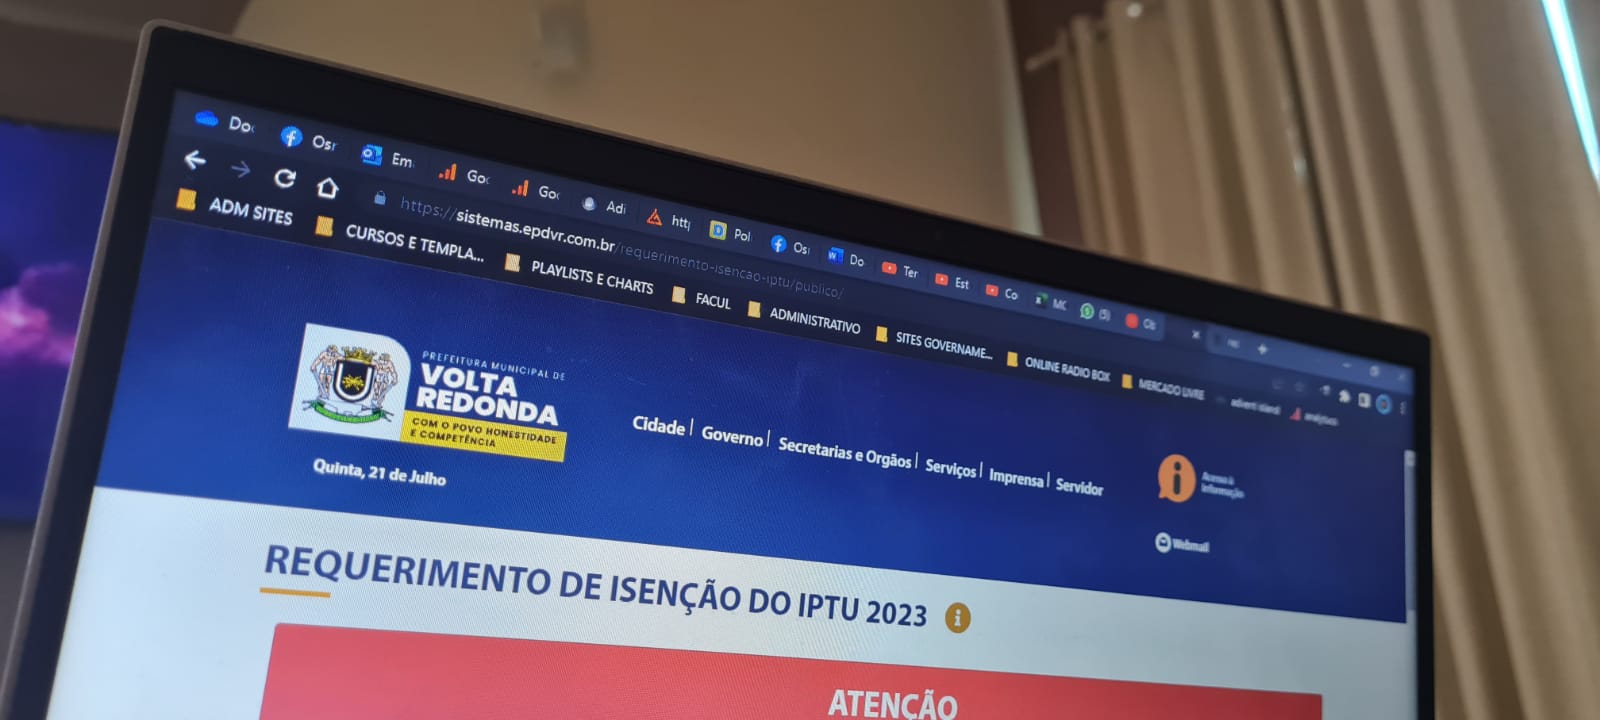 Desconto no IPTU 2023 pode ser solicitado até quarta-feira em Volta Redonda